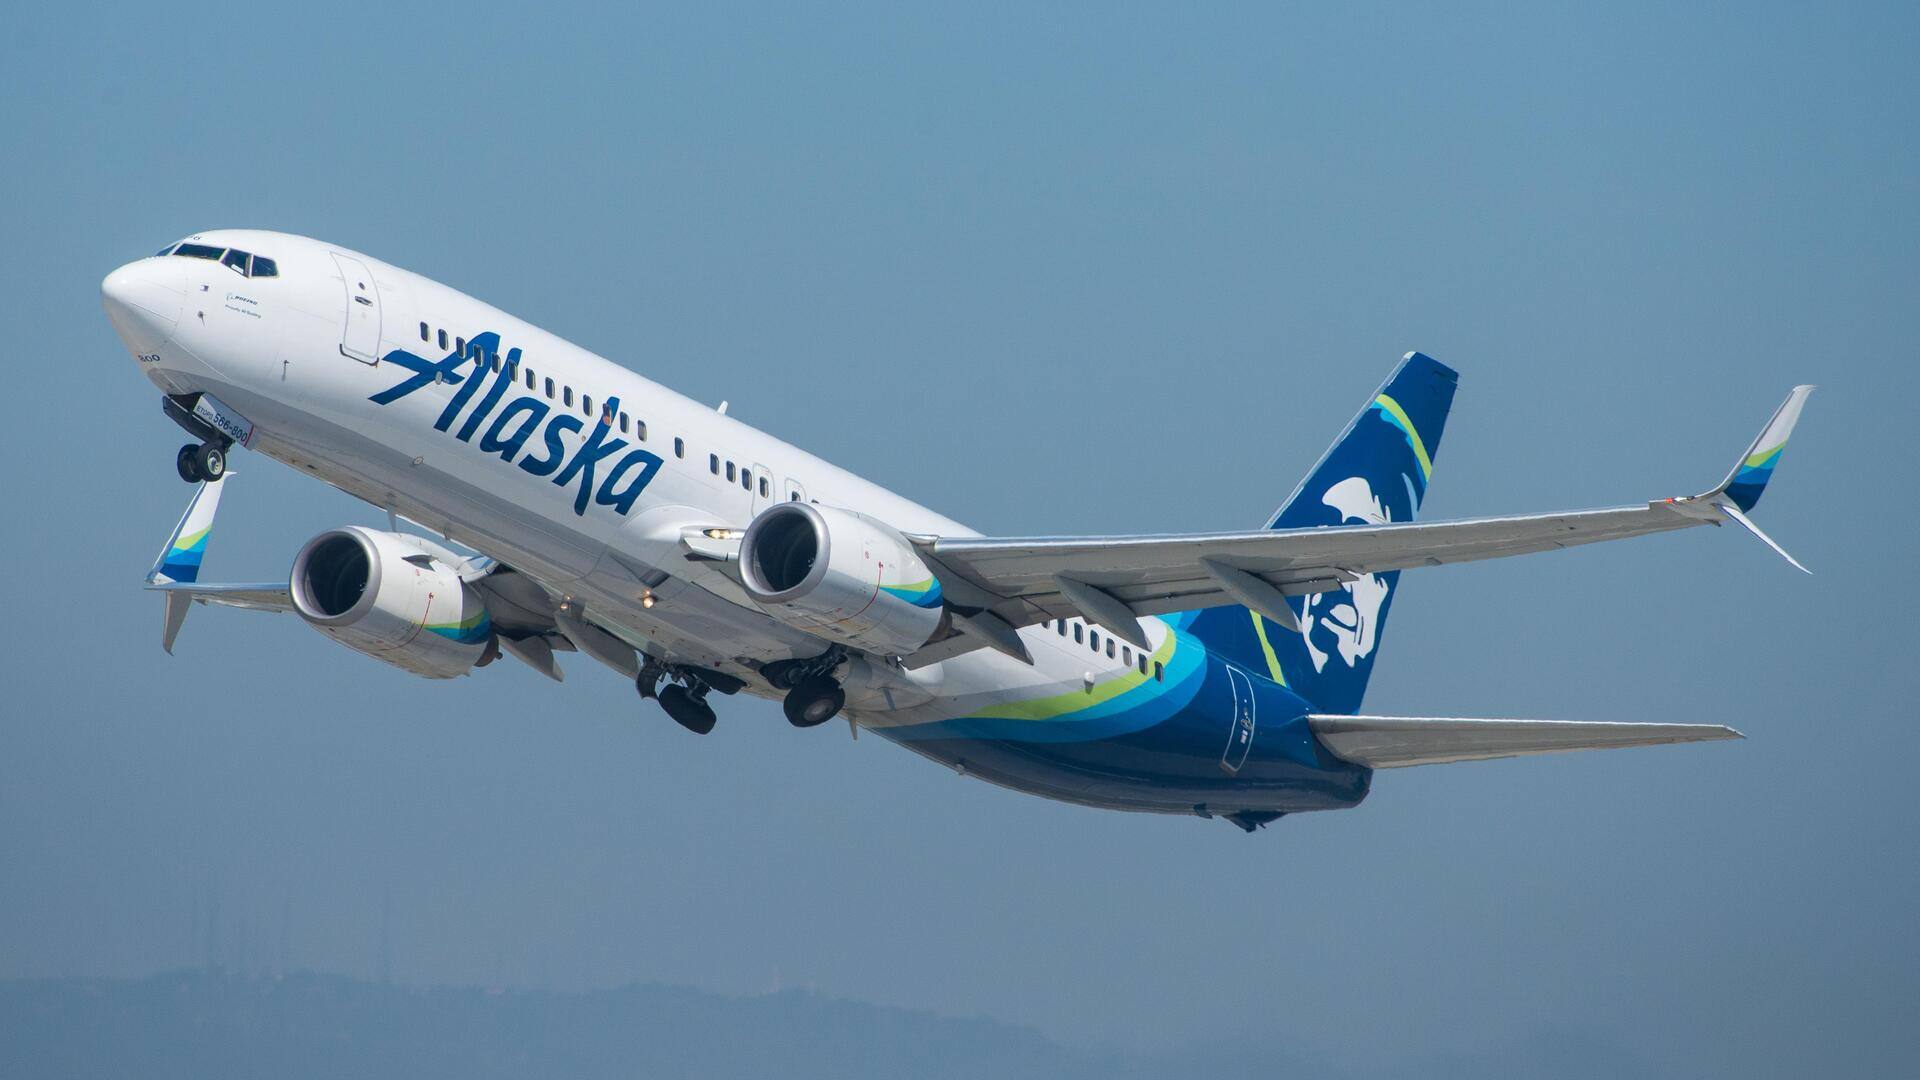 अमेरिका: अलास्का एयरलाइंस के पायलट ने उड़ान के दौरान बंद किया विमान का इंजन, हादसा टला